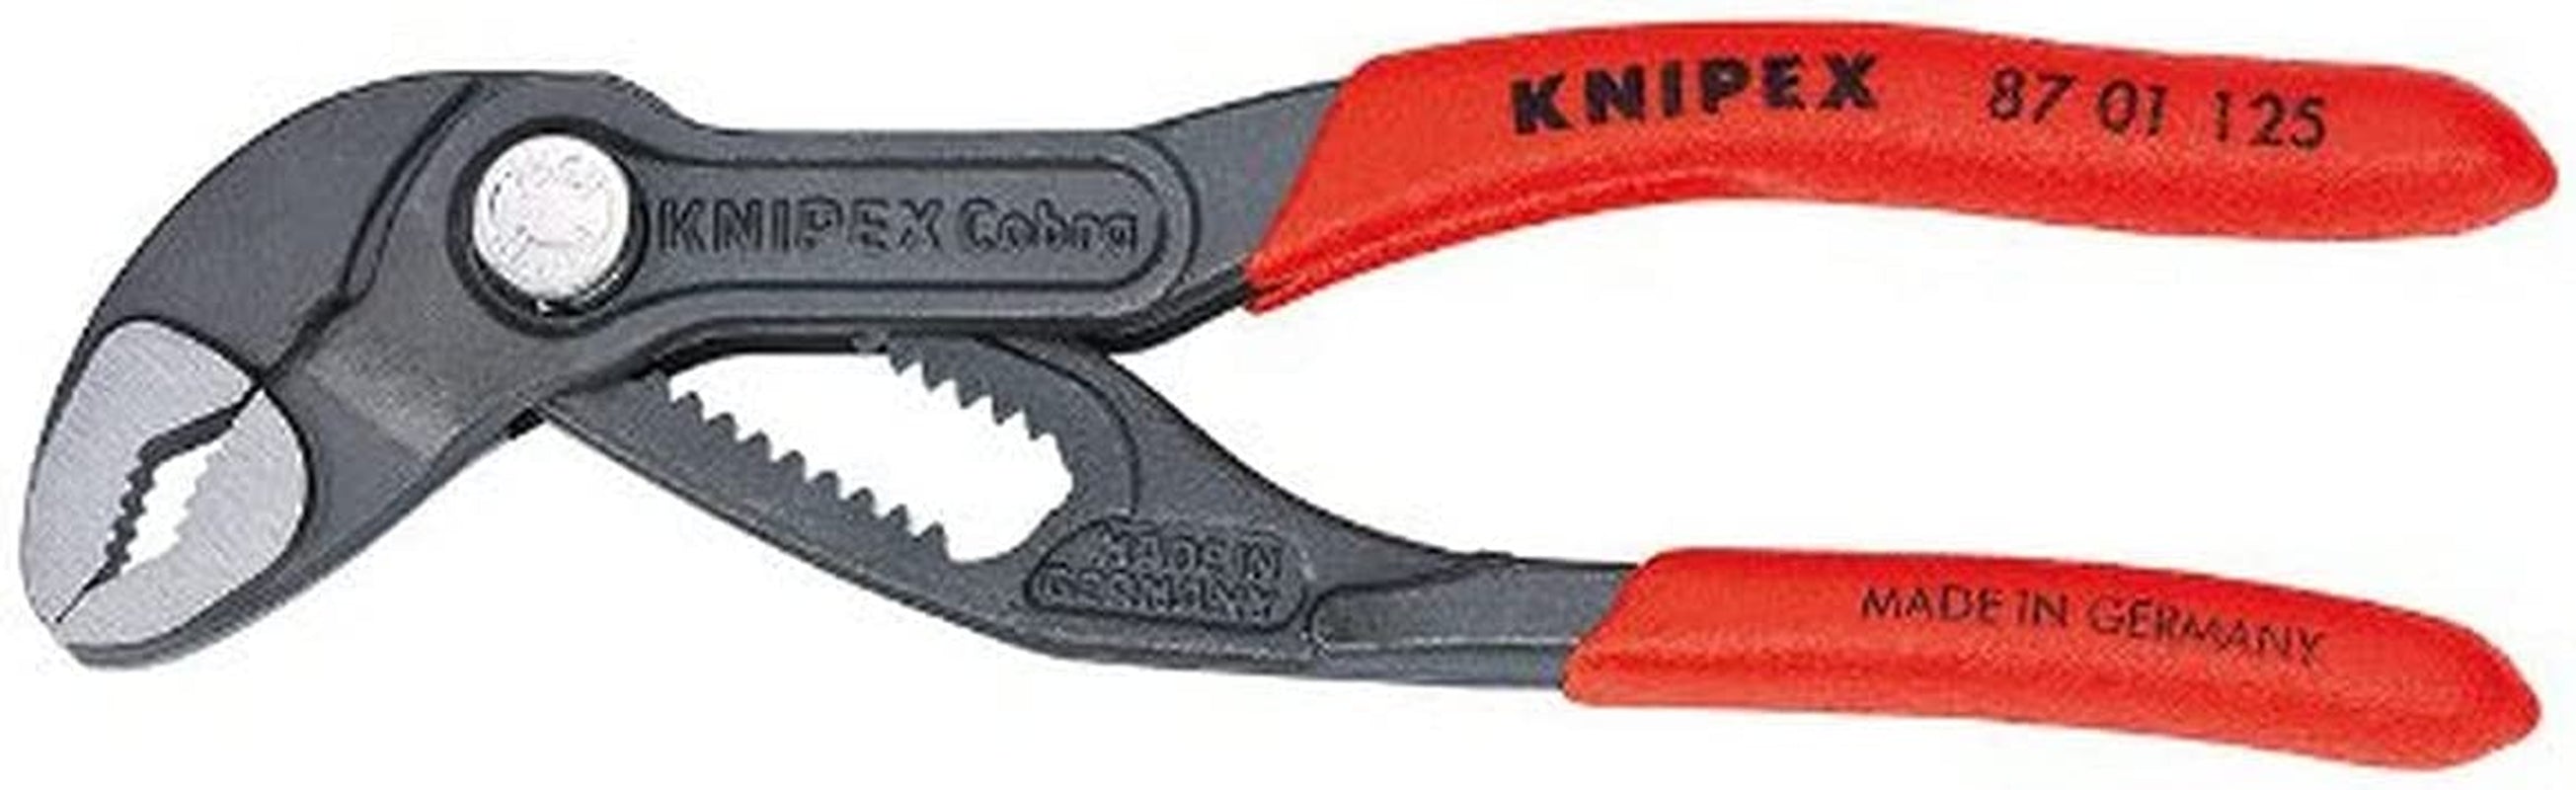 KNIPEX Tools, KNIPEX 87 01 125 SBA Cobra Pliers